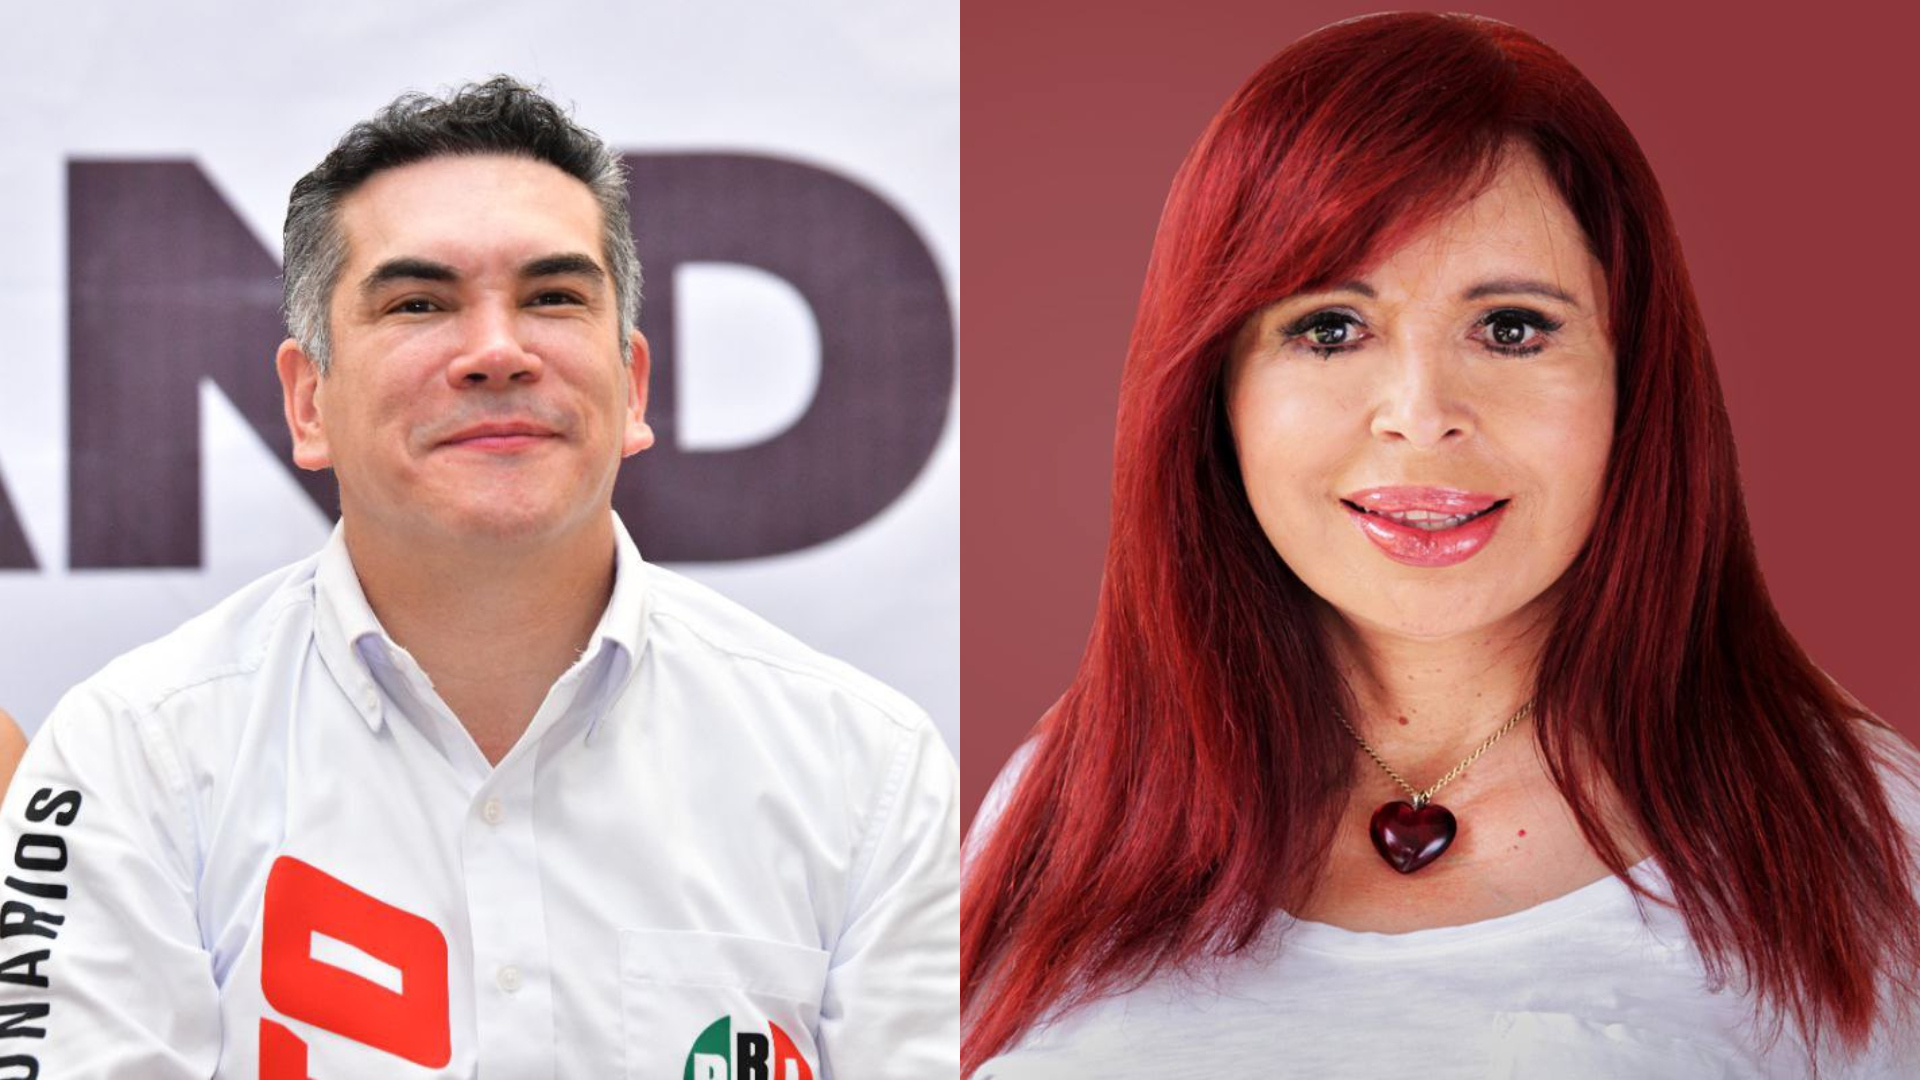 Diputados del PRI arremetieron contra Layda Sansores por audios de Alito Moreno: “Son venganza política”